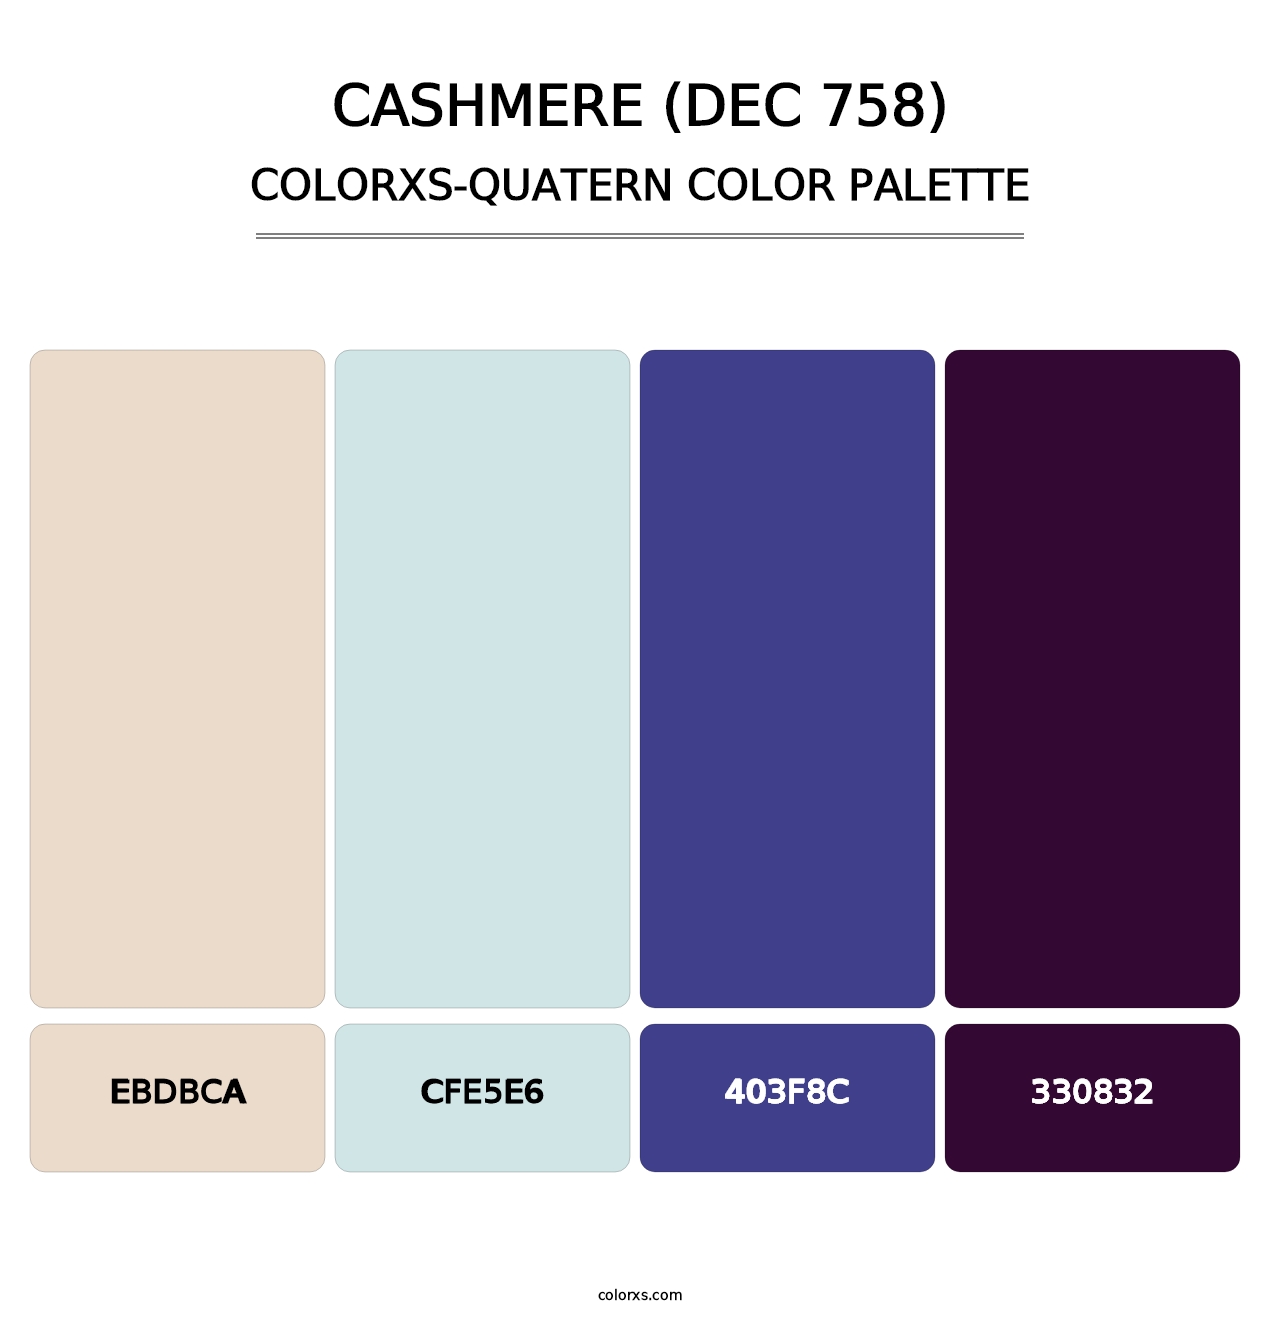 Cashmere (DEC 758) - Colorxs Quatern Palette